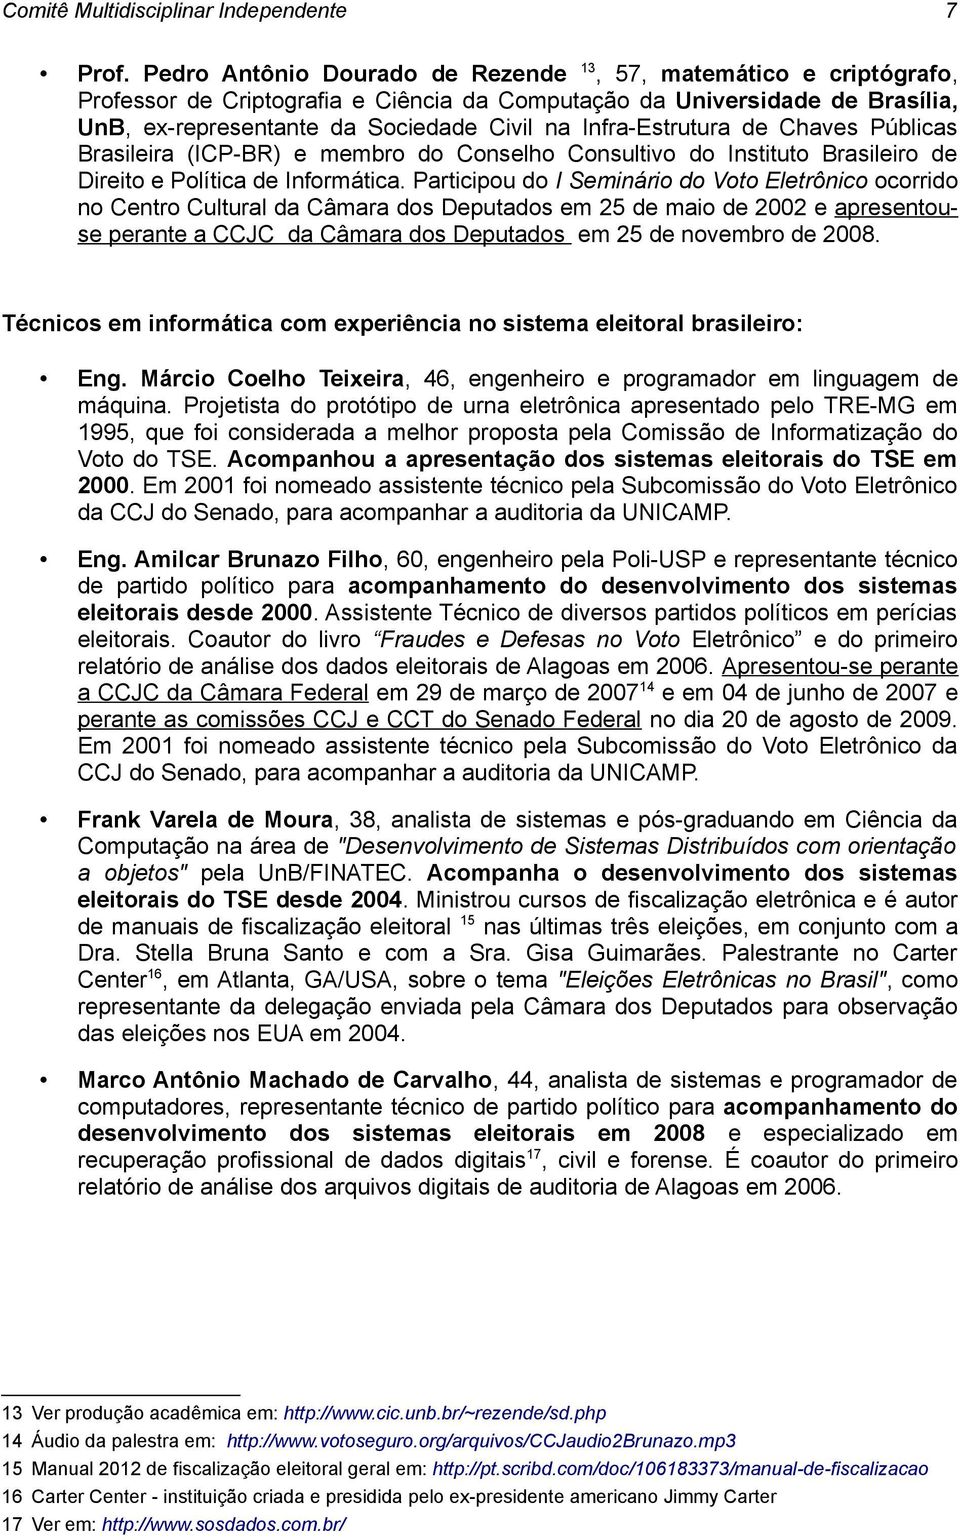 Infra-Estrutura de Chaves Públicas Brasileira (ICP-BR) e membro do Conselho Consultivo do Instituto Brasileiro de Direito e Política de Informática.